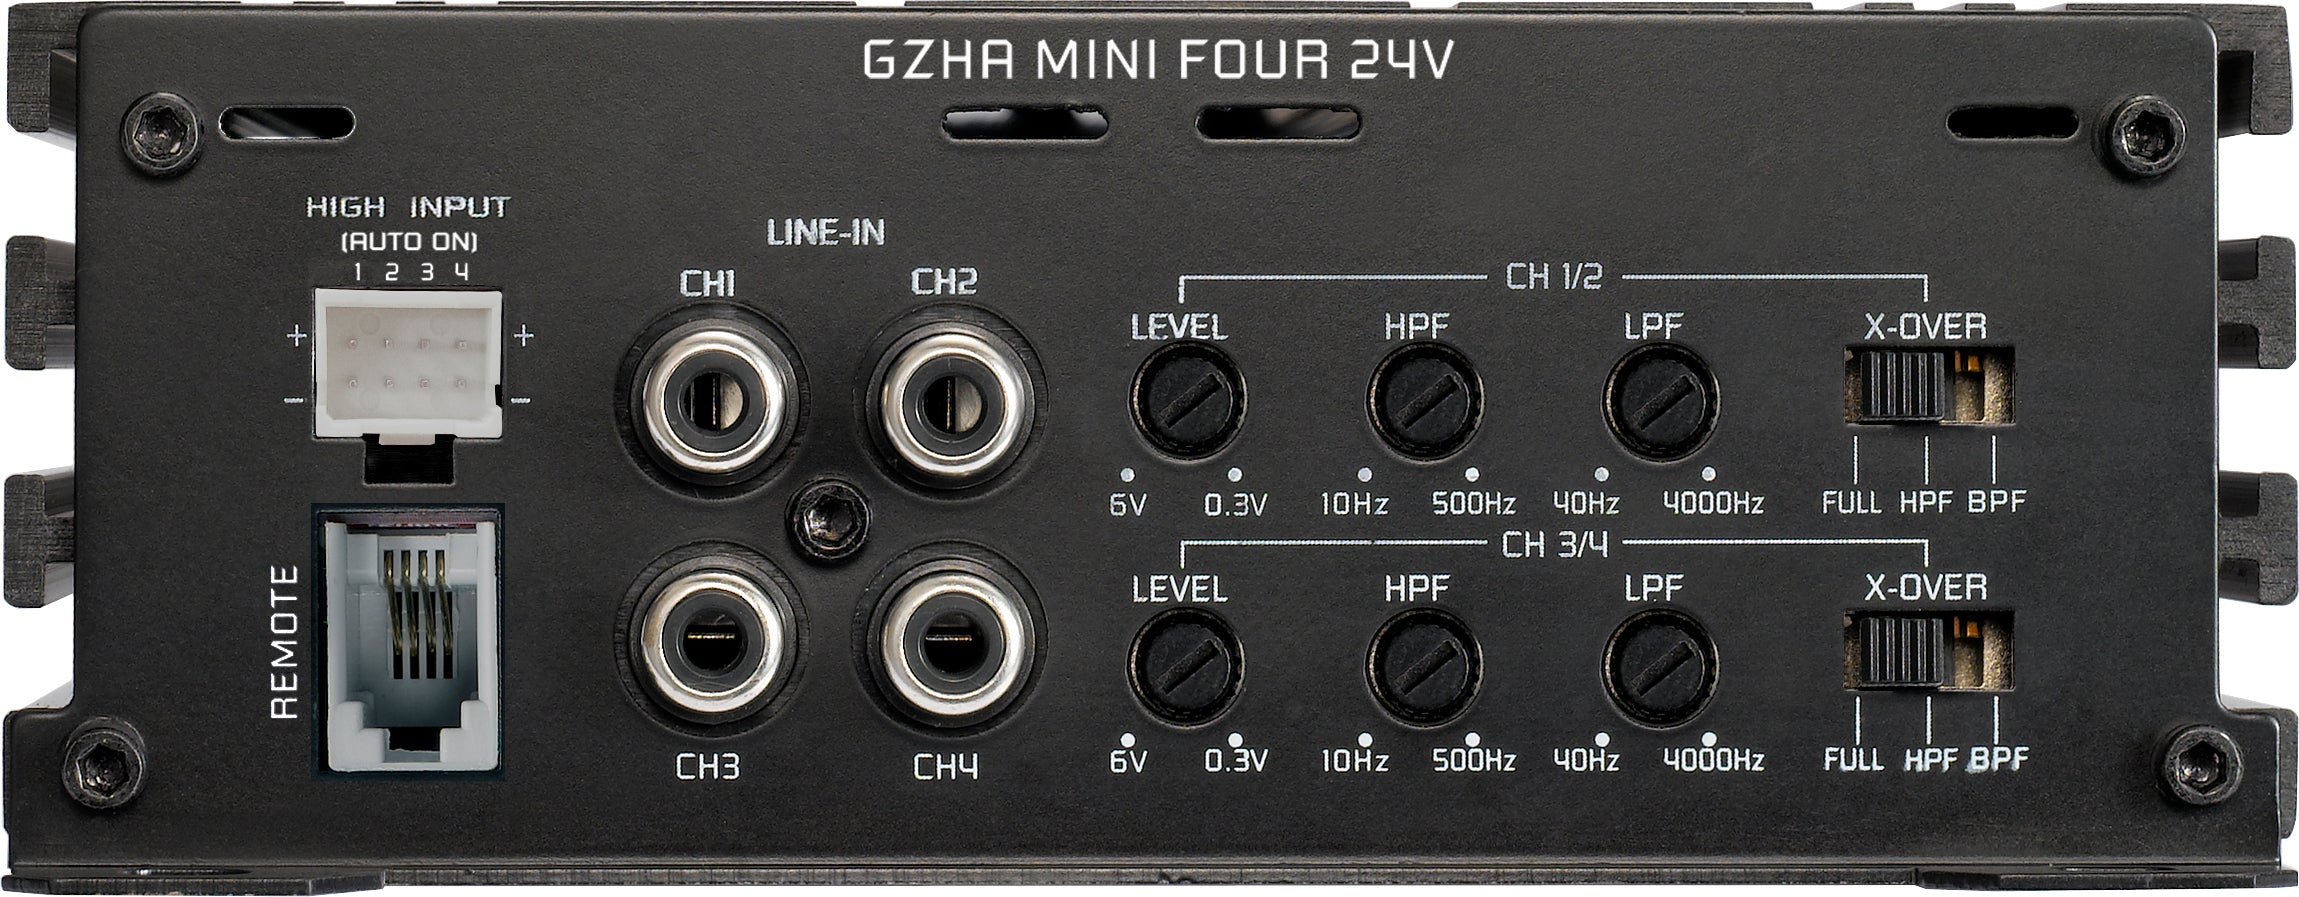 Ground Zero GZHA mini FOUR 24V